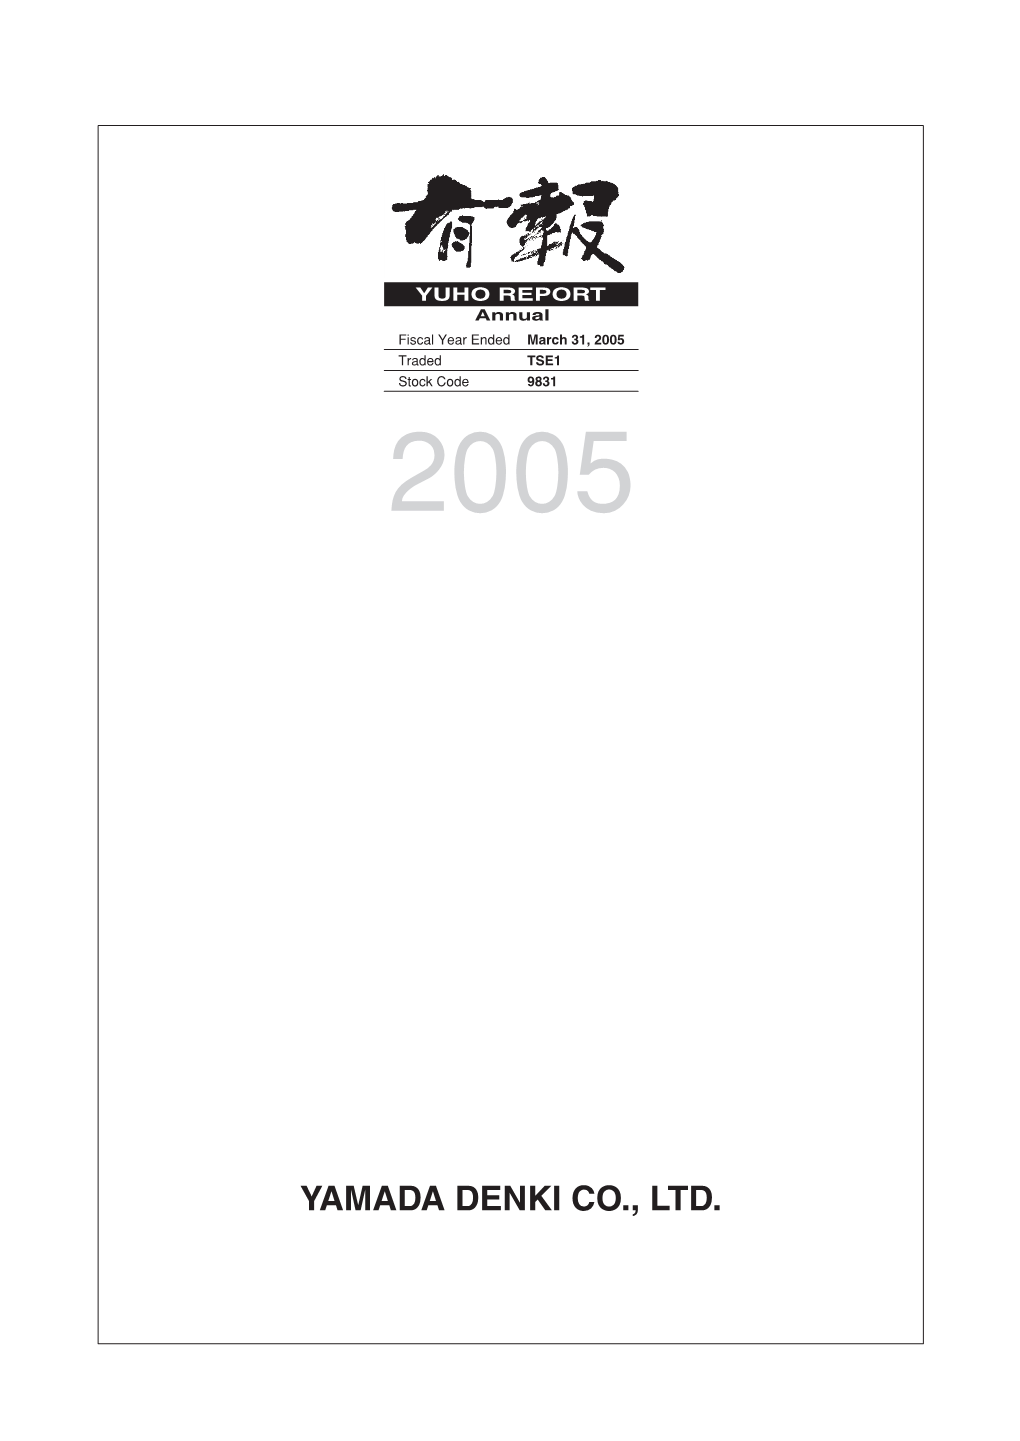 Yamada Denki Co., Ltd